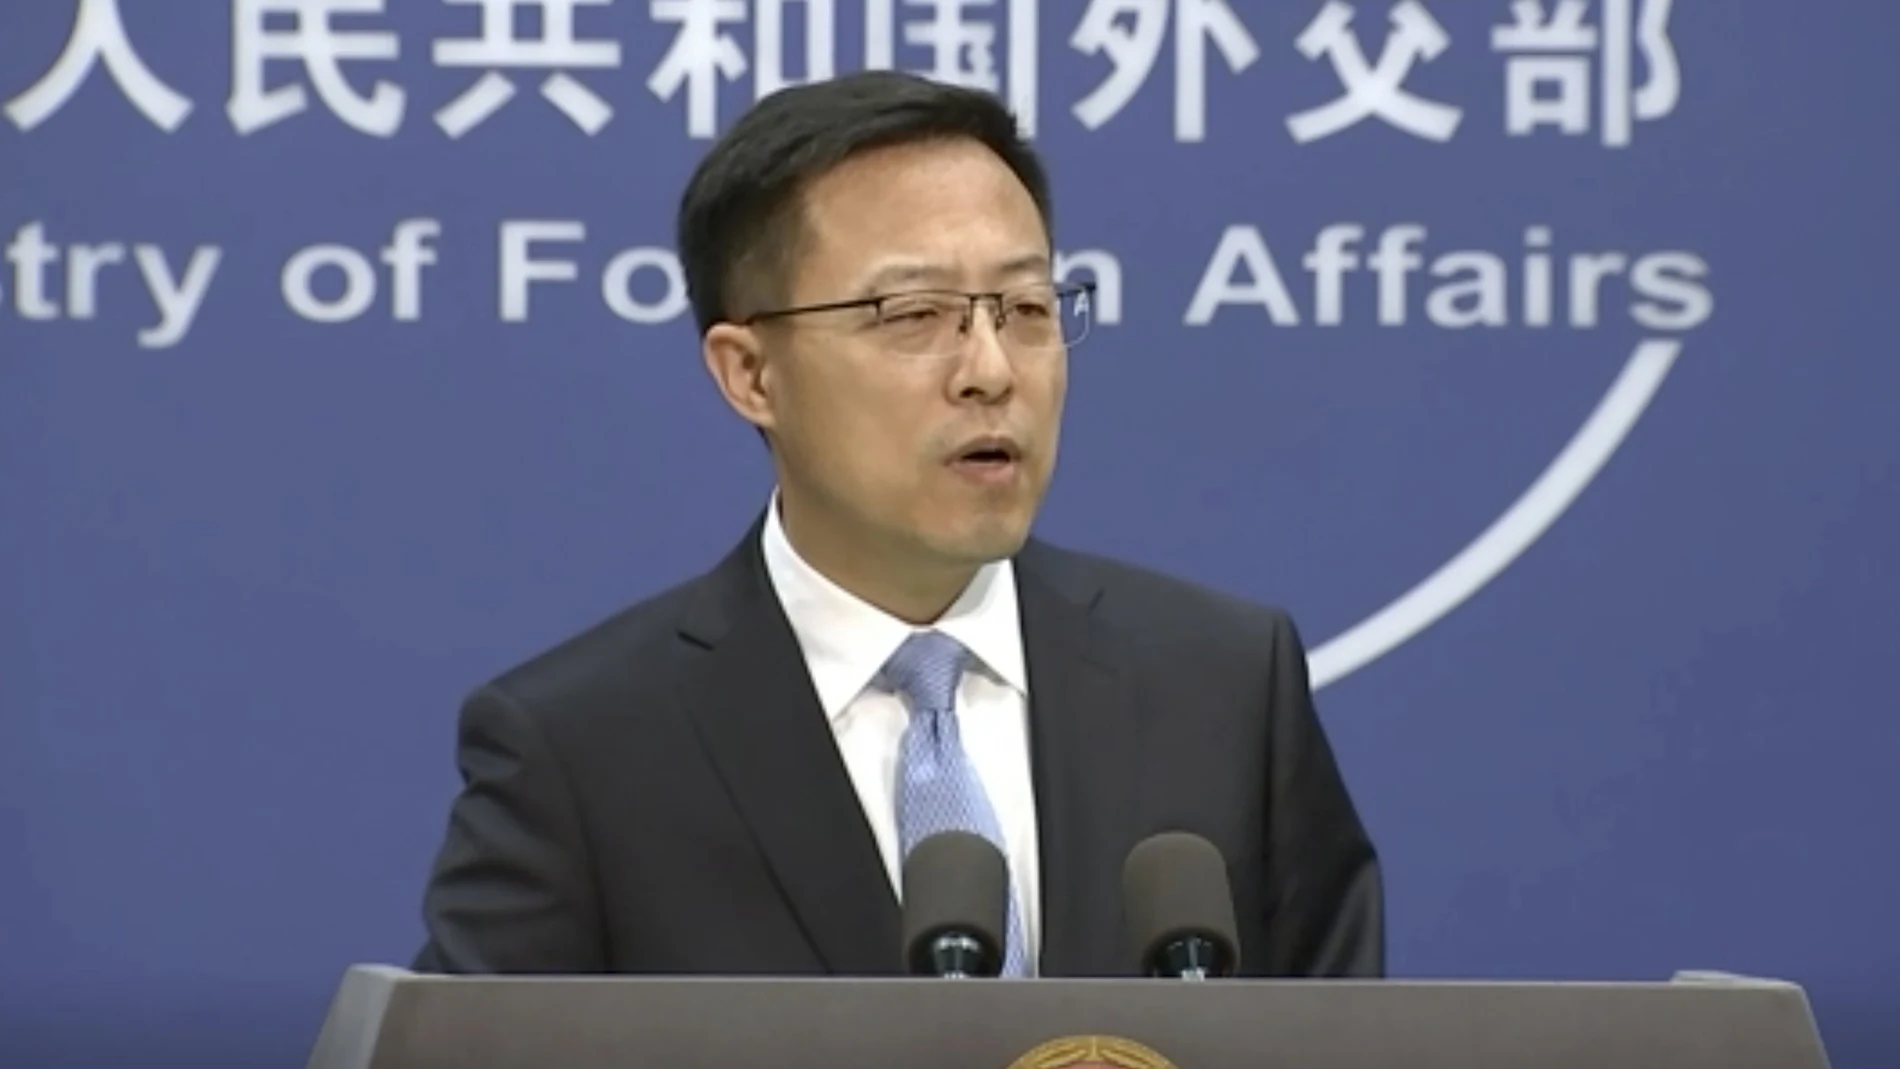 El portavoz del ministerio de Exteriores chino, Zhao Lijian